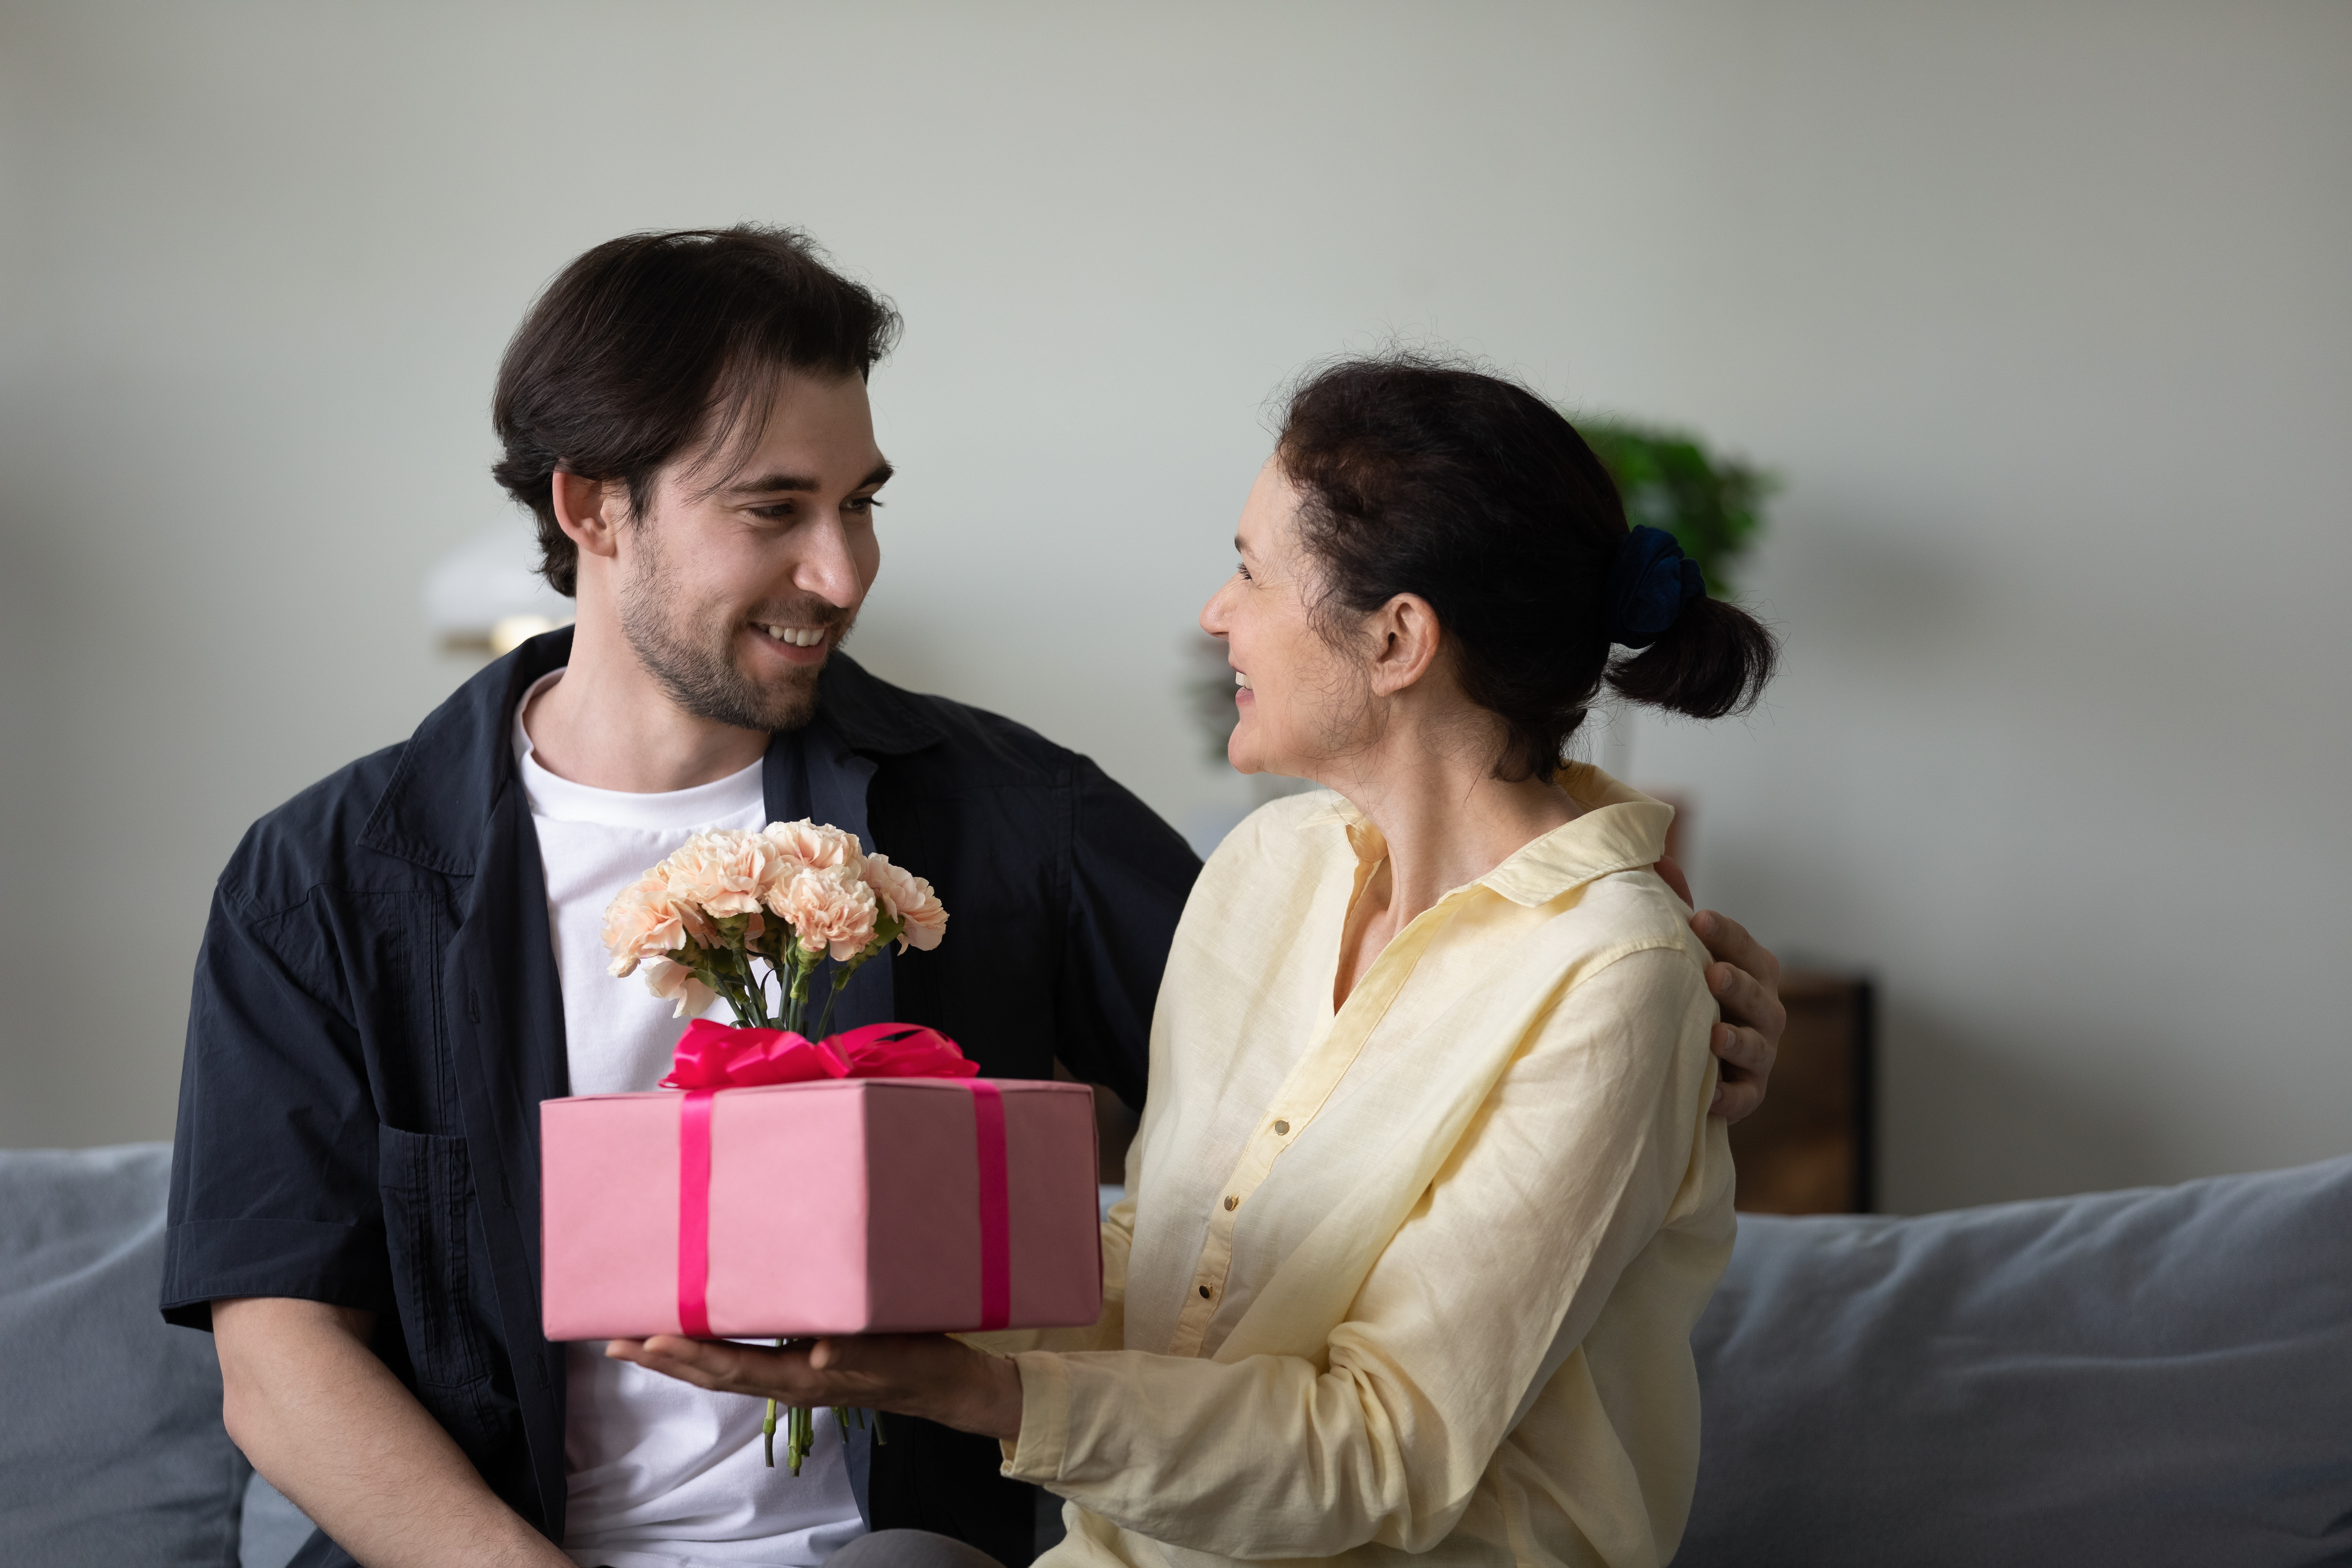 Une femme plus âgée offrant un cadeau à un homme | Source : Shutterstock